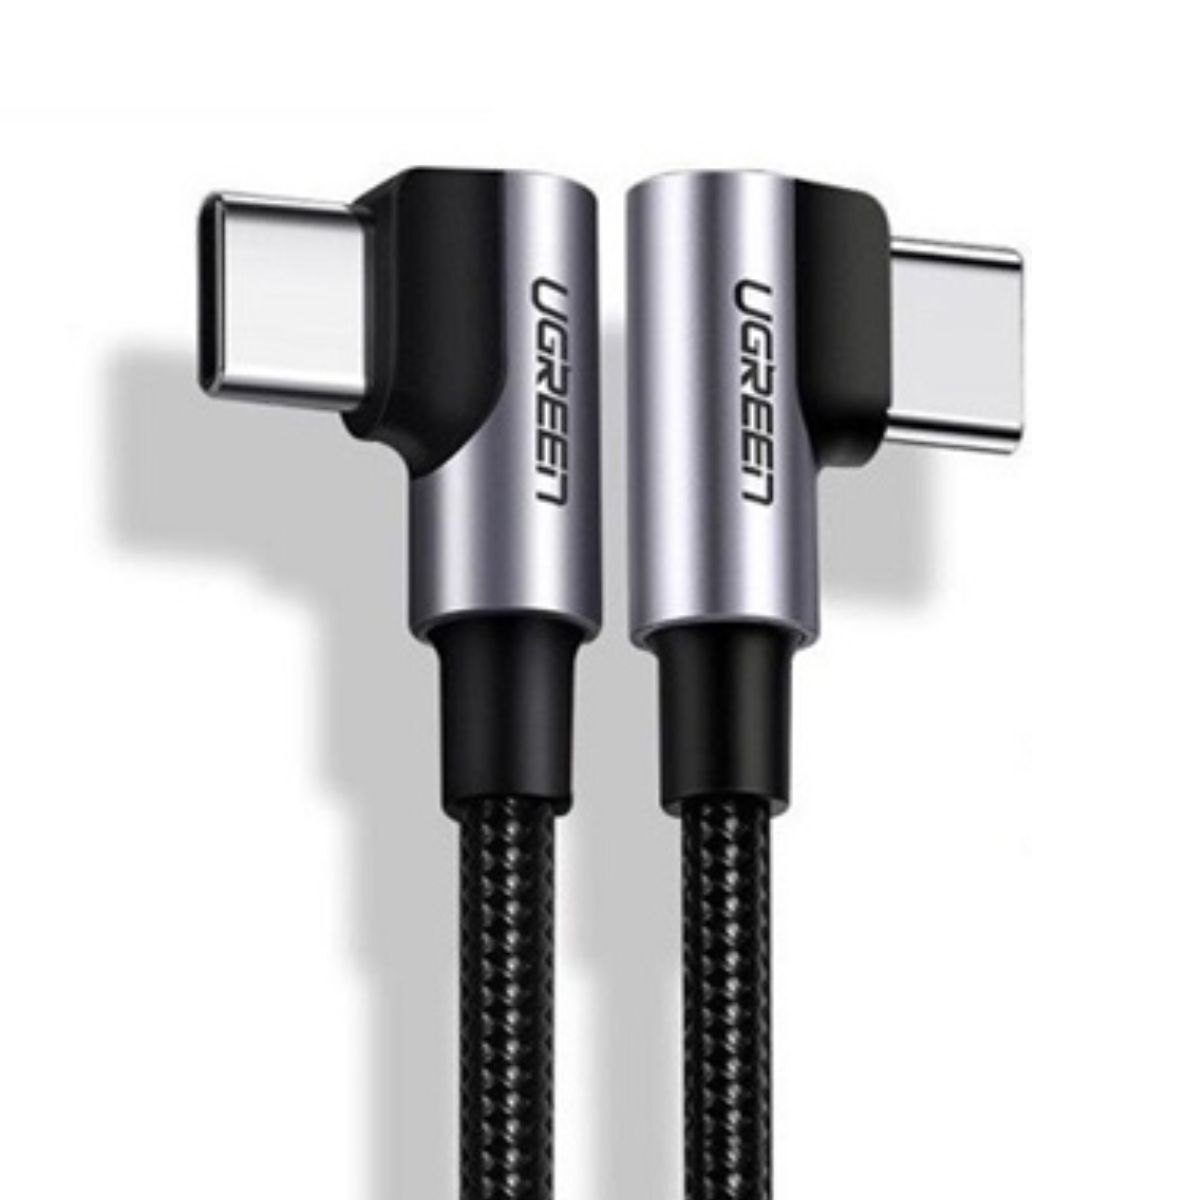 Cáp sạc chiều dài 2m USB-C đến USB2.0-C Ugreen 70698 US335 màu đen, tốc độ truyền dữ liệu 480Mbps